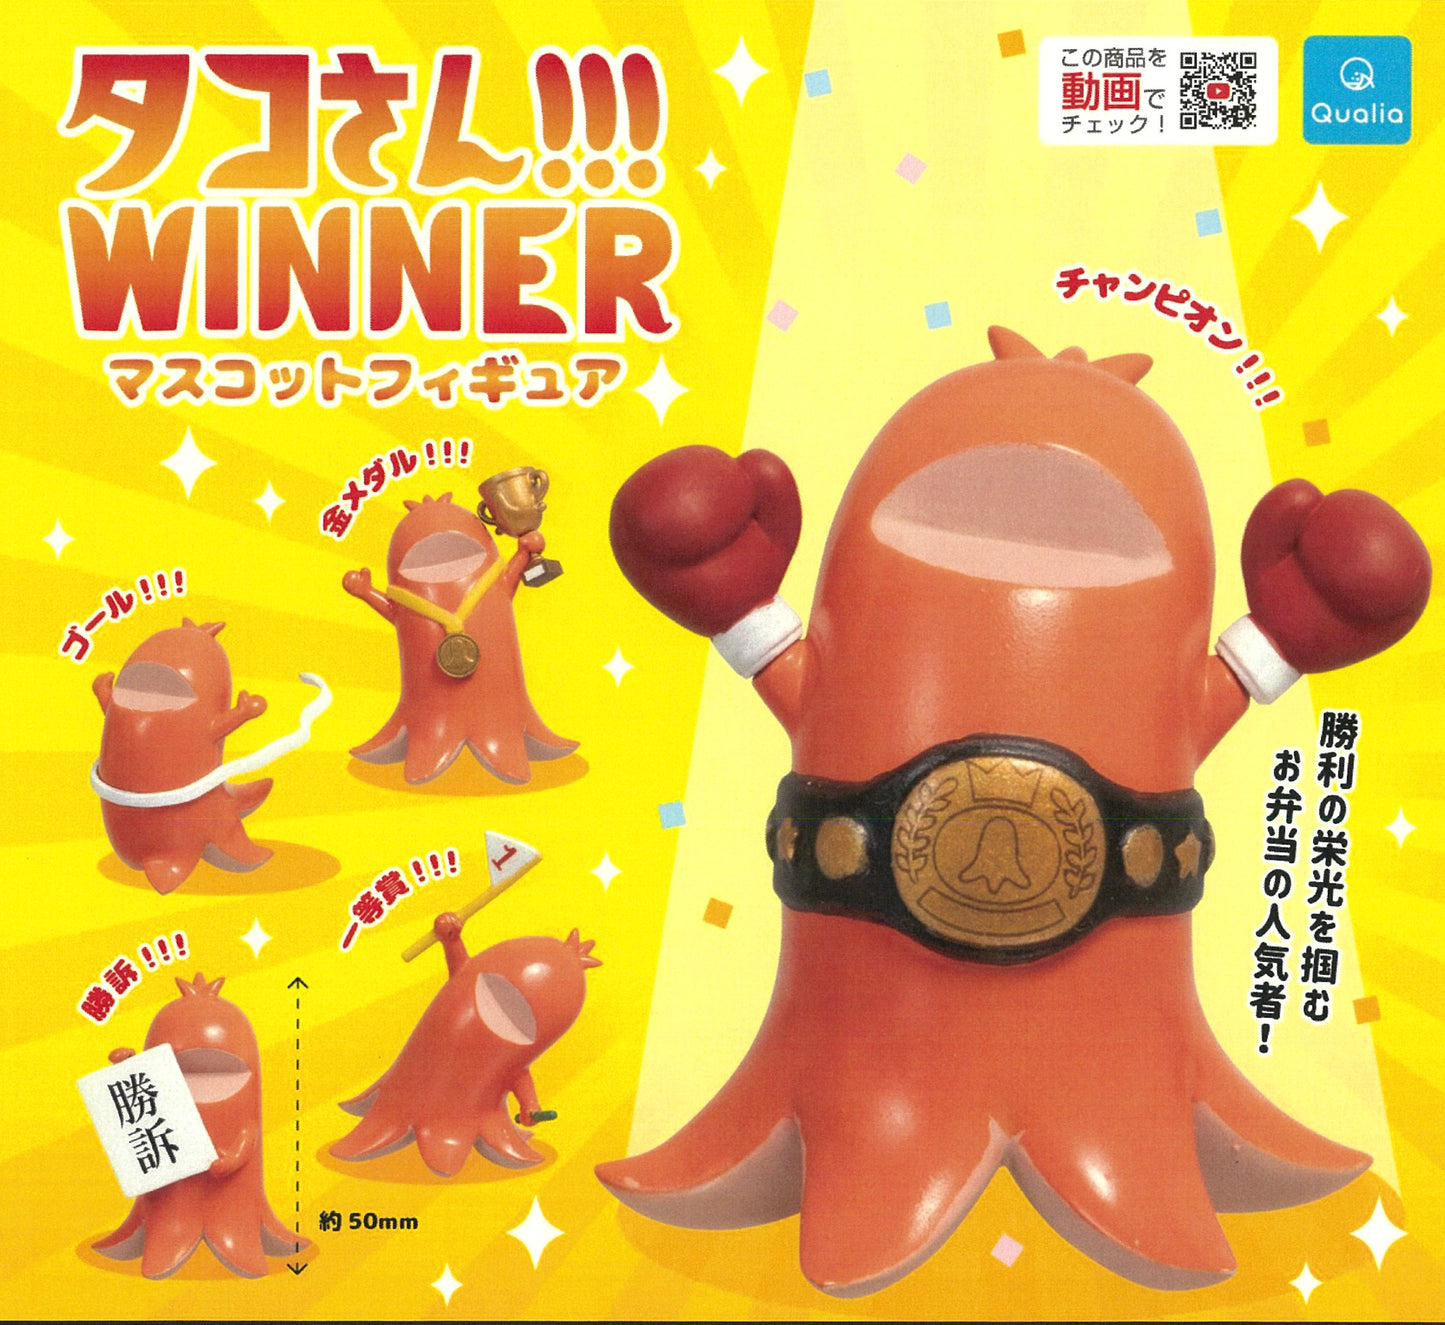 70264 Wiener Winner Figurine Capsule-5